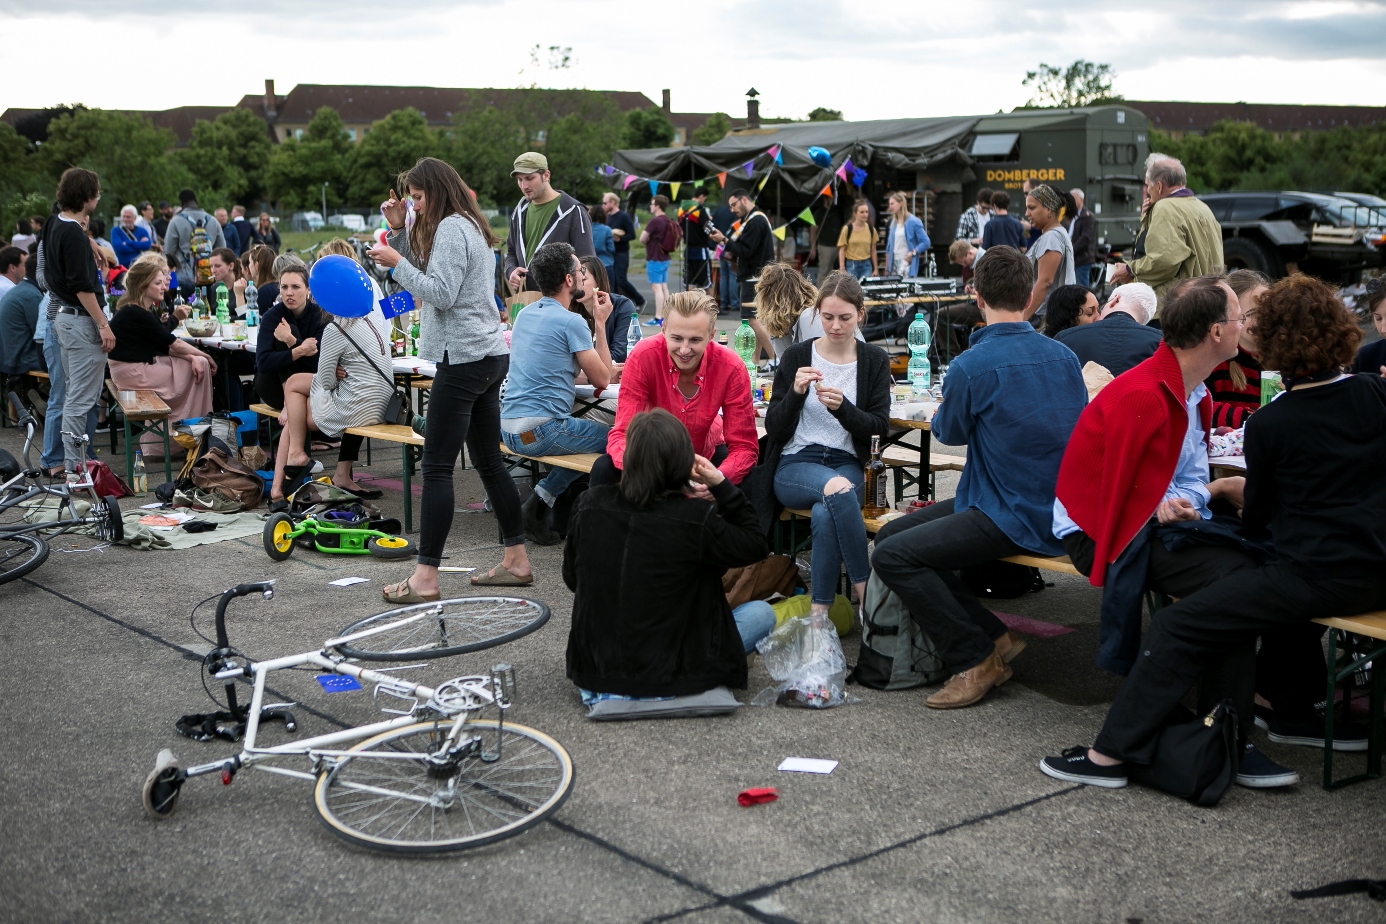 Großes Fest mit Tischen im Freien, Räder liegen am Boden, junge Menschen unterhalten sich